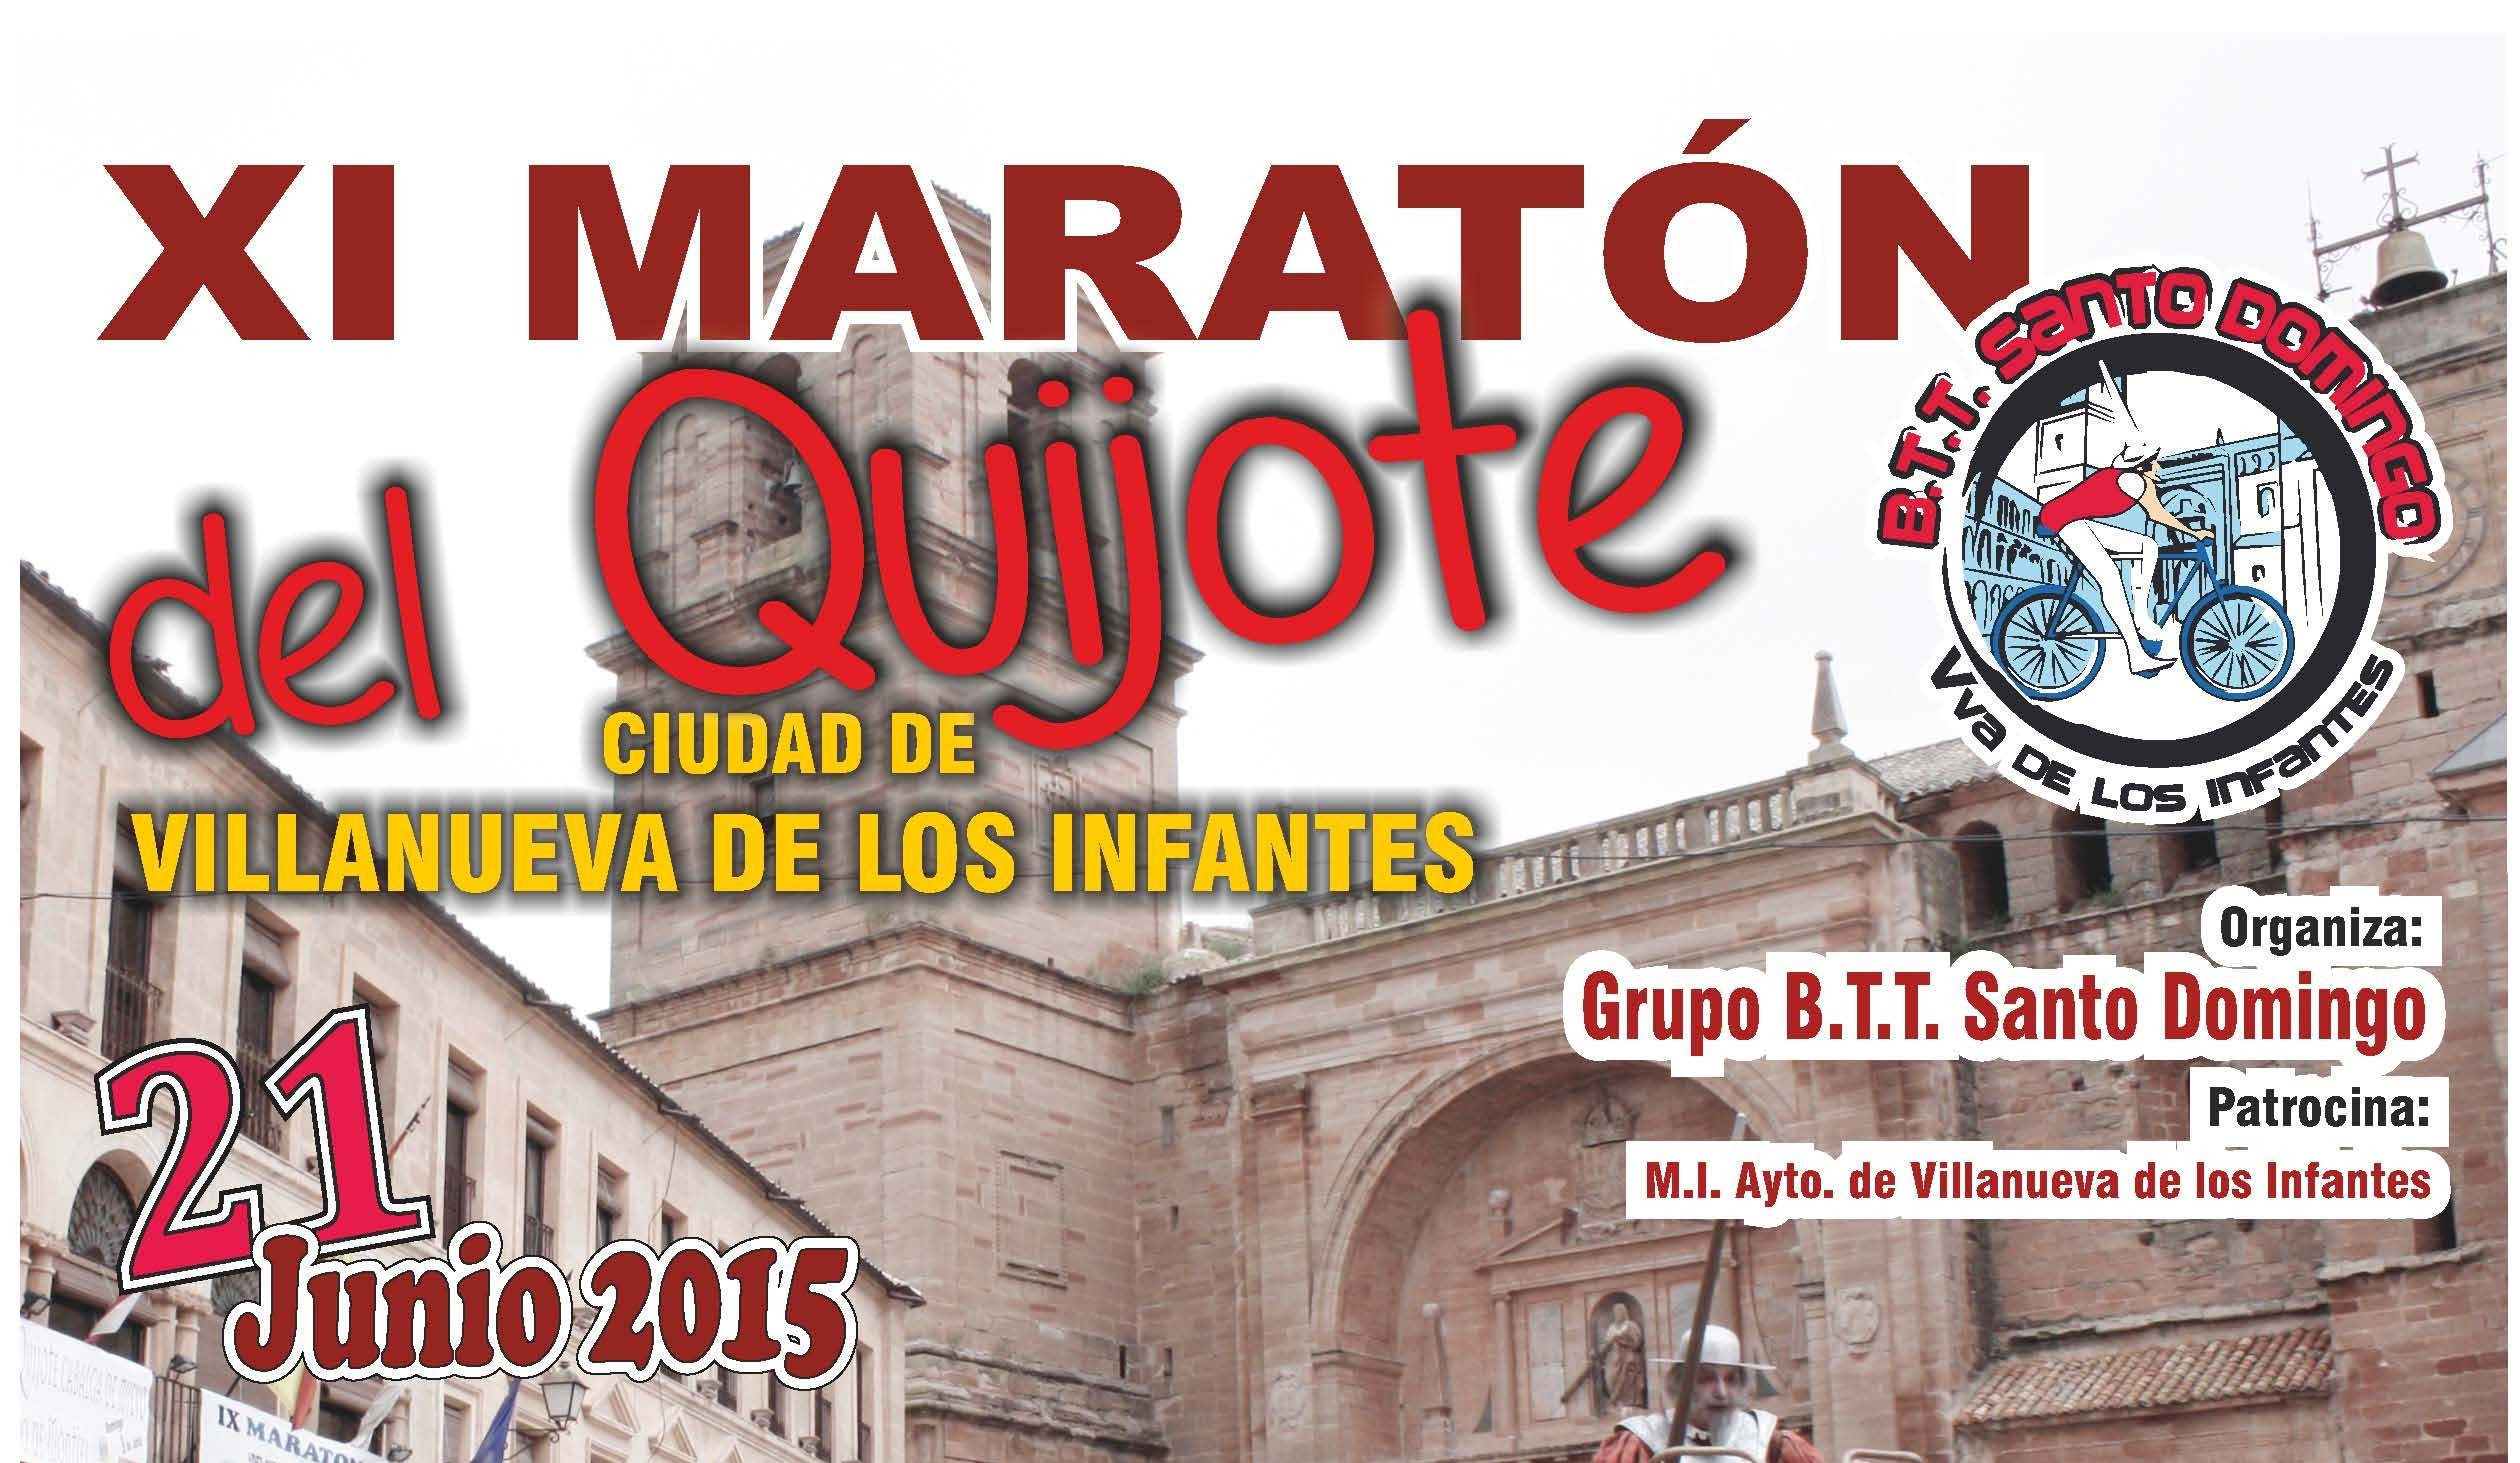 El Club Ciclista BTT Santo Domingo organiza el XI Maratón del Quijote Ciudad de Villanueva de los Infantes